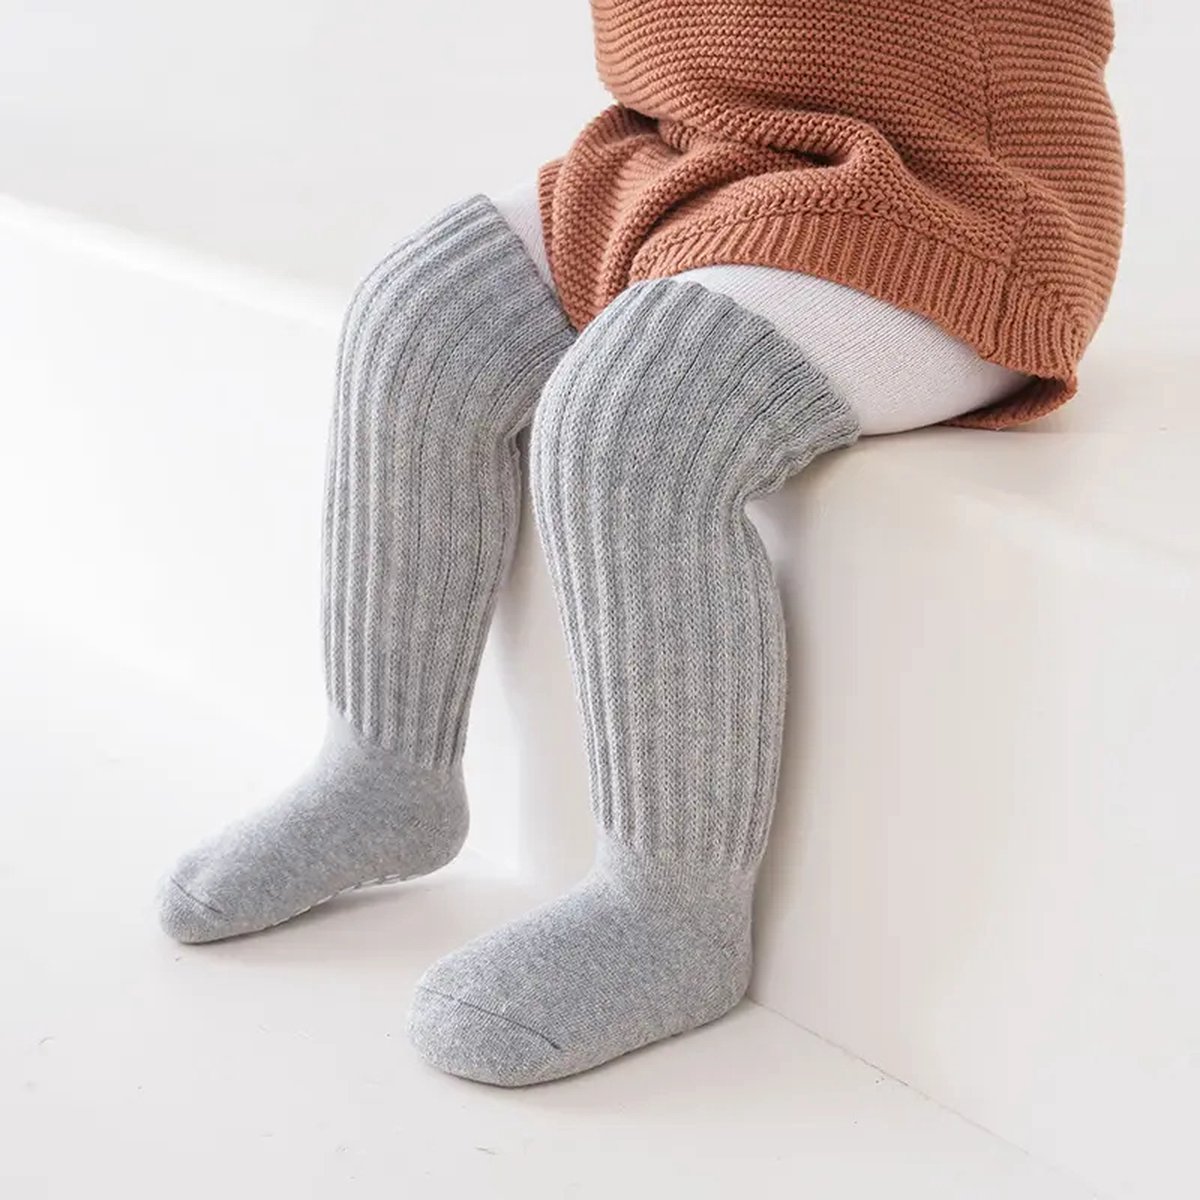 Ychee - Anti slip Kinder Sokken - Kousen - Lange Sokken - Extra Grip - Veilig - Lopen - Spelen - Comfort - Stretch - Grijs - 1-3 jaar - Maat: Small